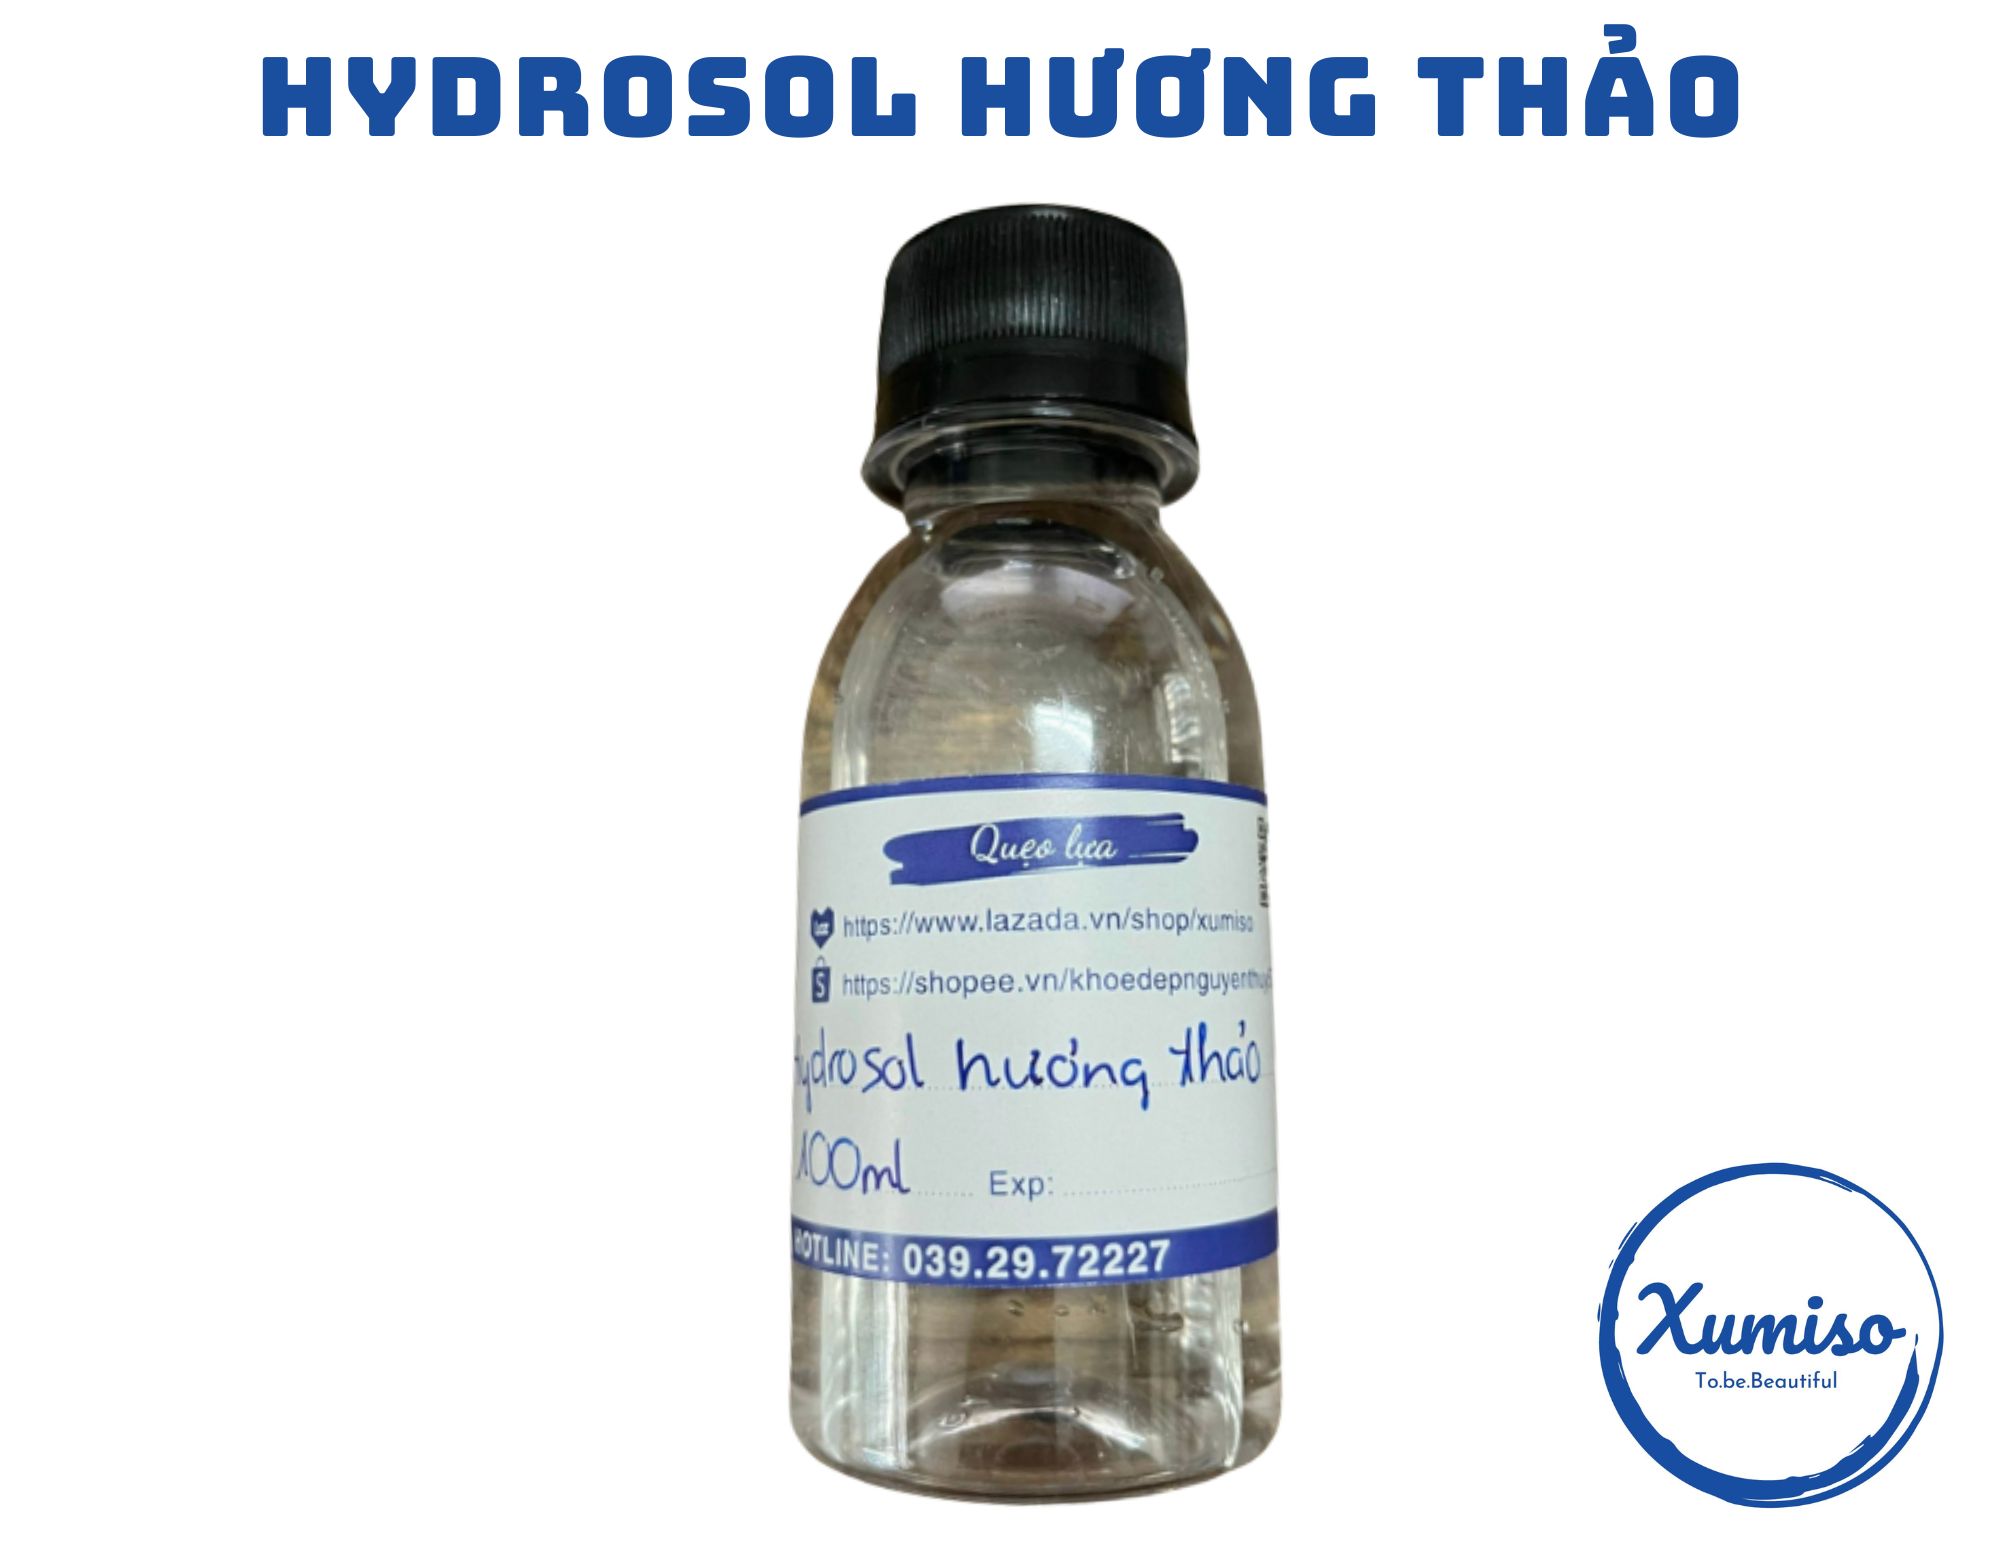 Hydrosol Hương Thảo - Rosemary hydrosol - Nước chưng cất